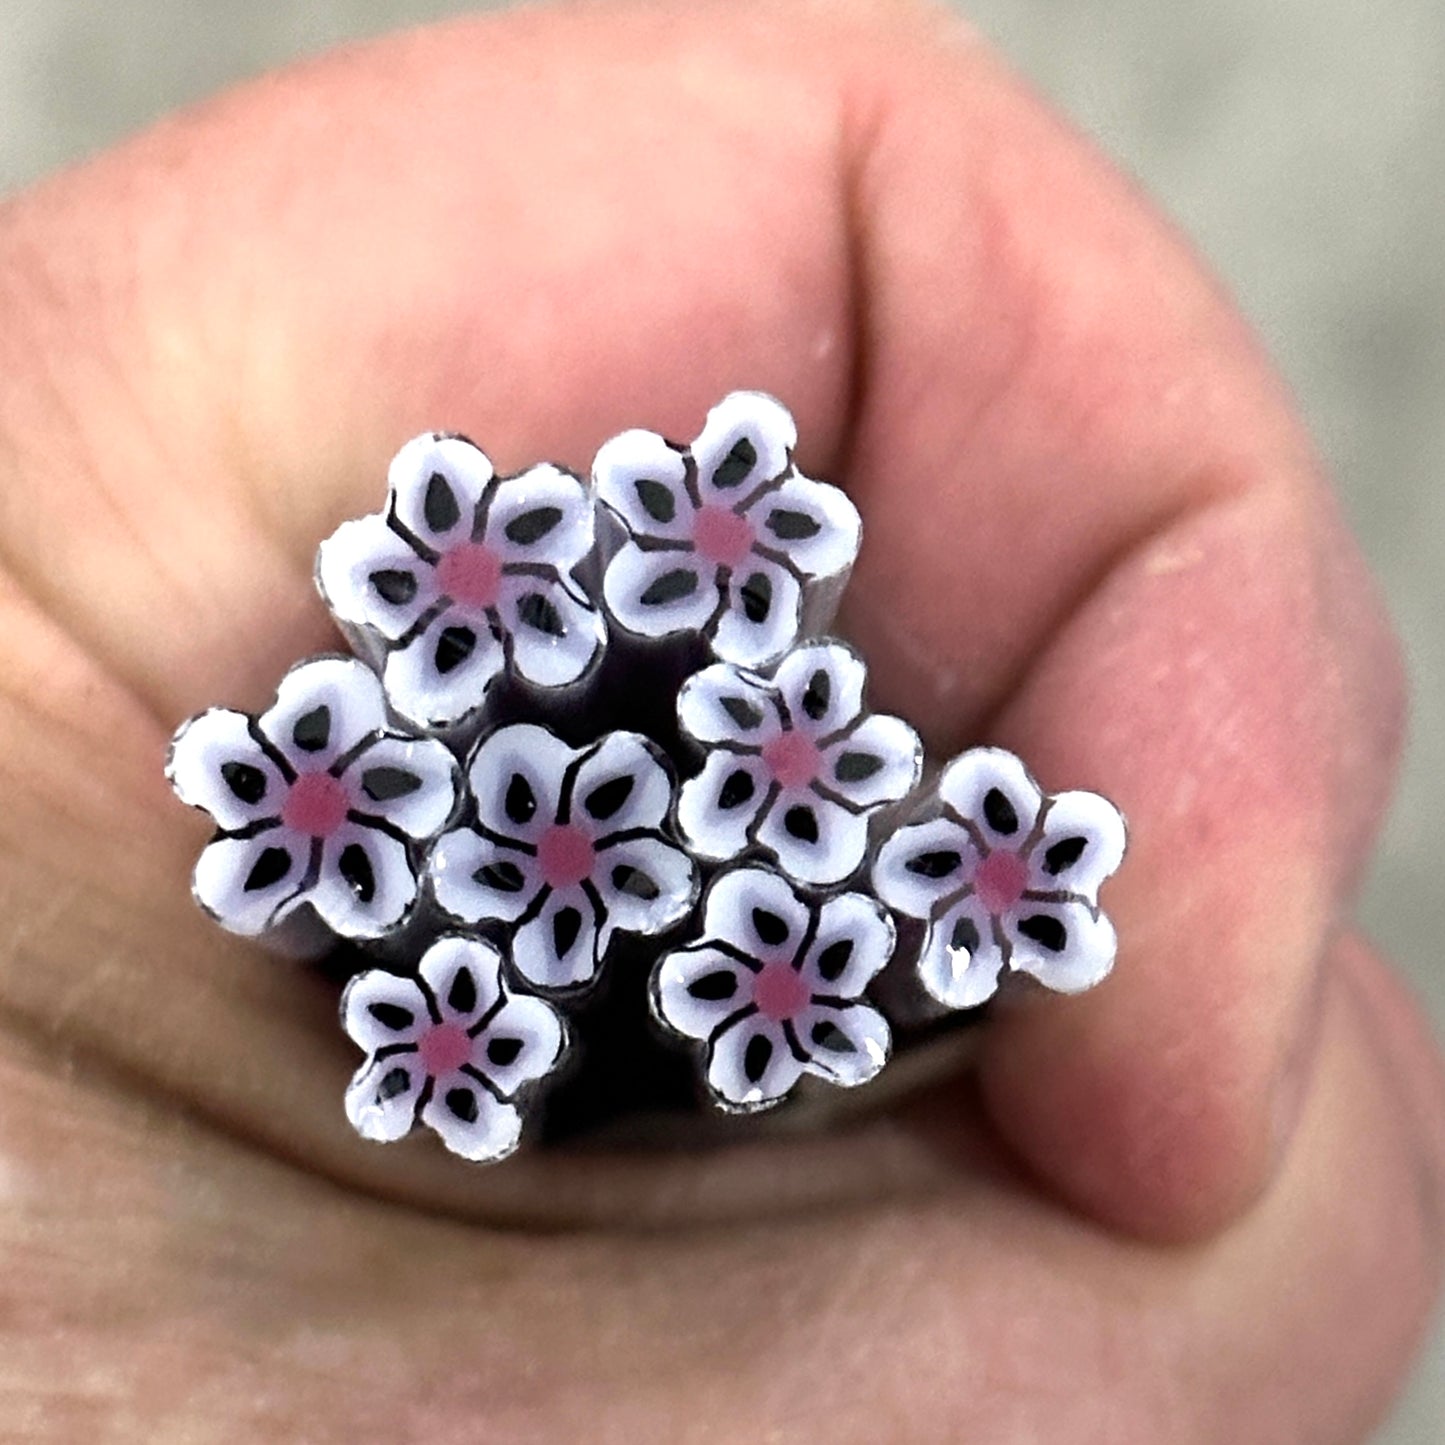 Purple and White Wildflowers, 1.5oz, coe 90 Murrini